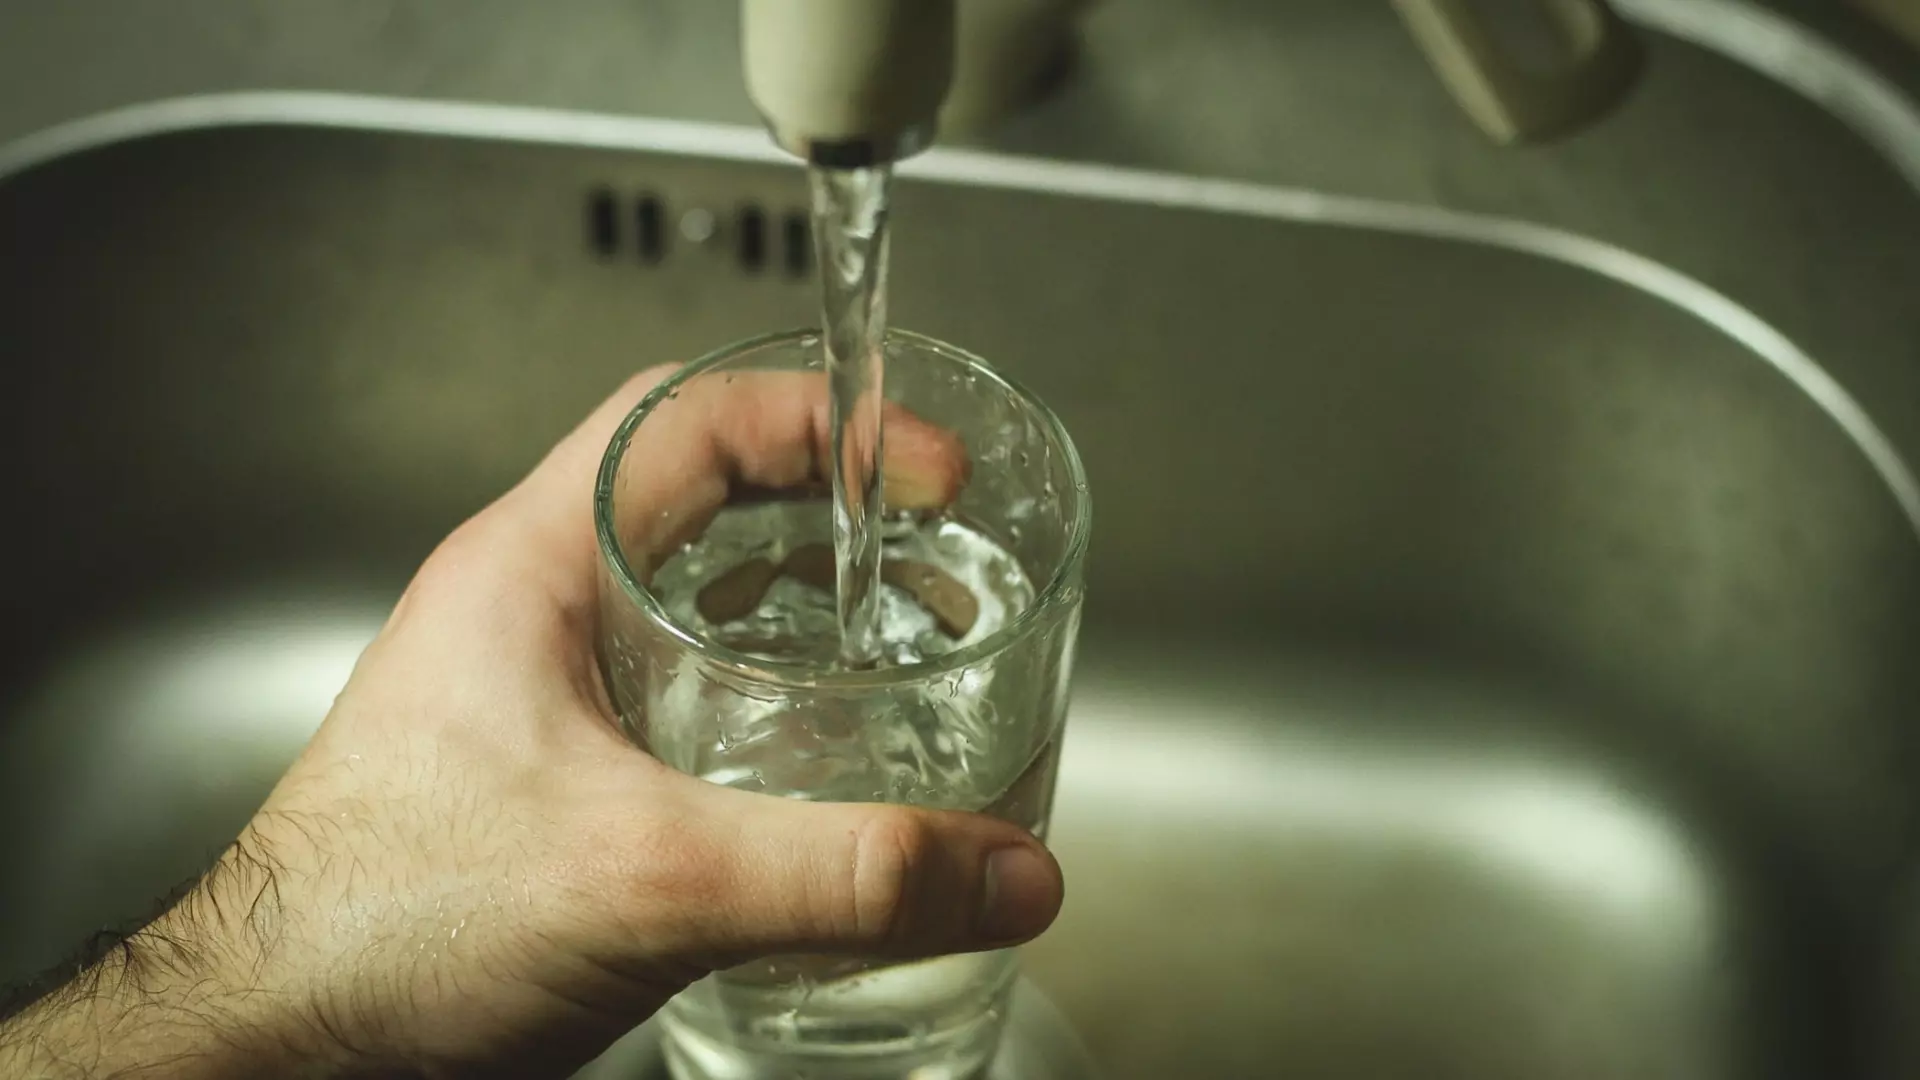 Объем воды лучше всего отмерять стаканами